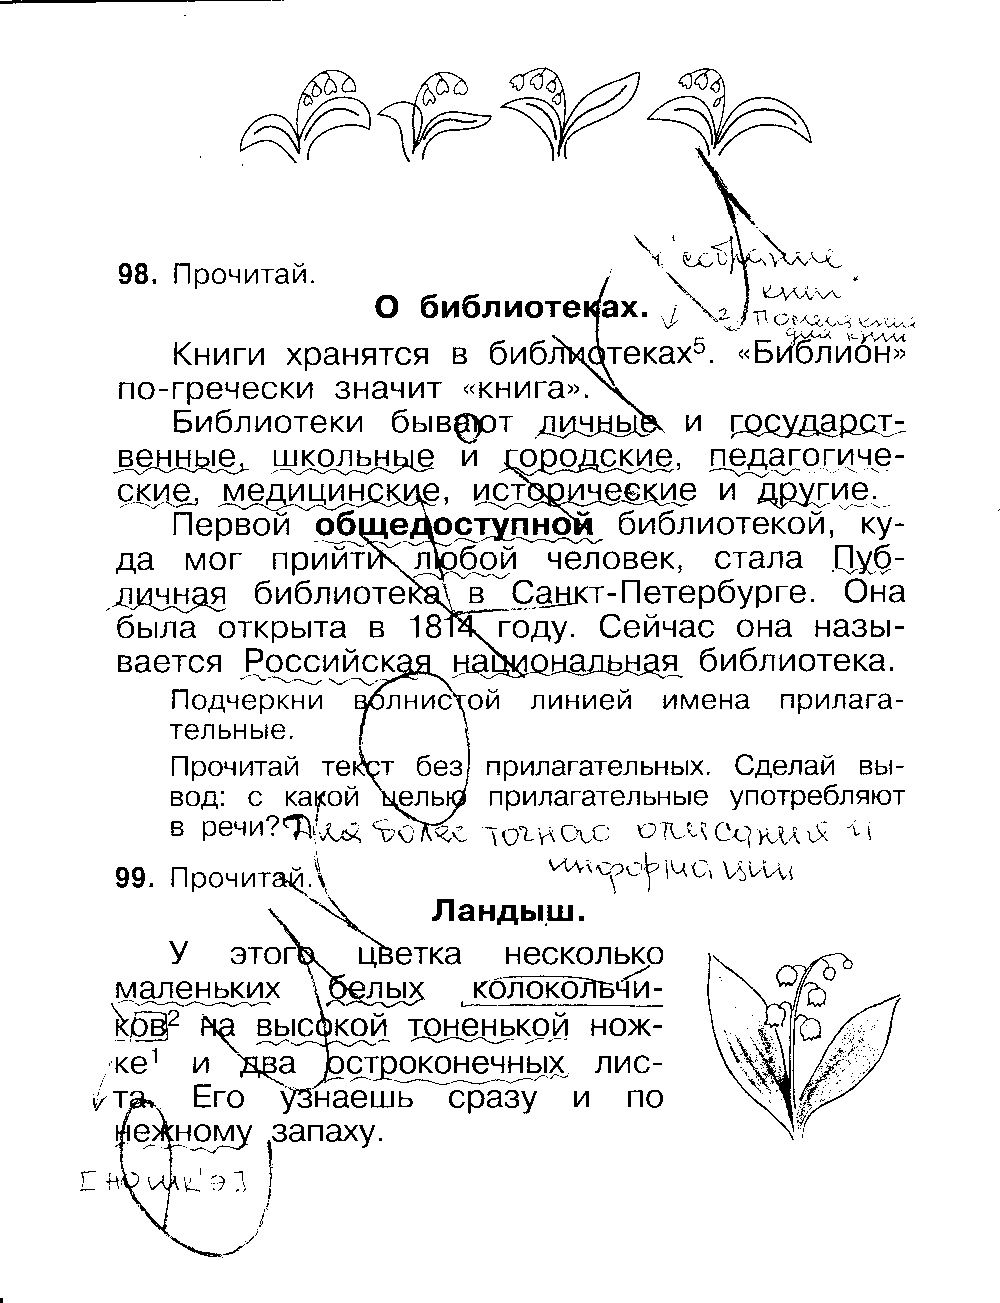 ГДЗ Русский язык 3 класс - стр. 22